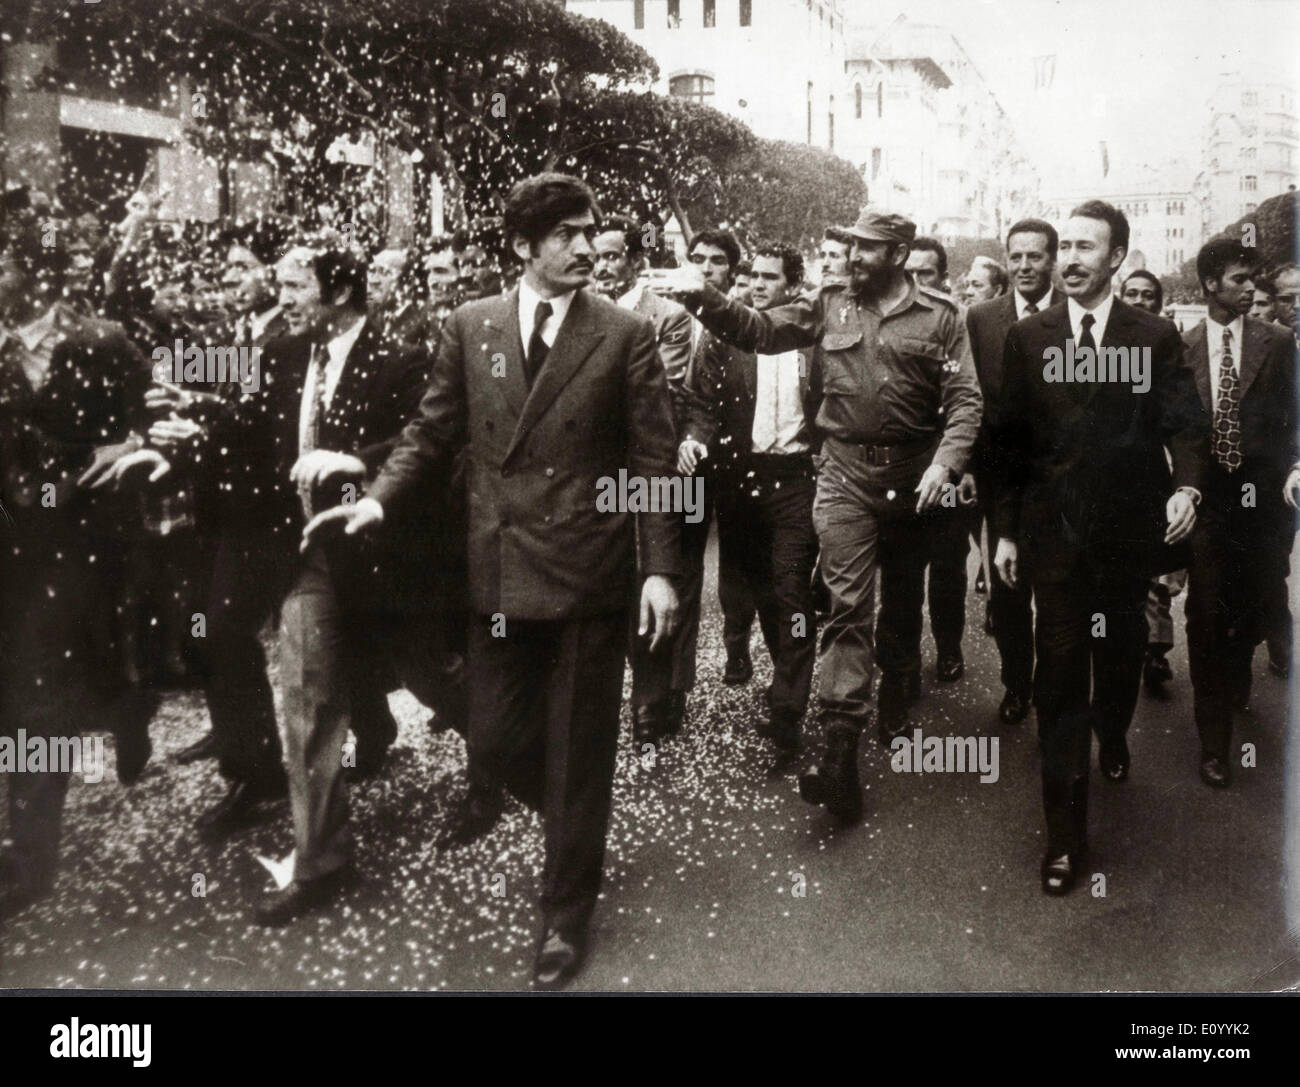 President of Cuba Fidel Castro marches in parade Stock Photo